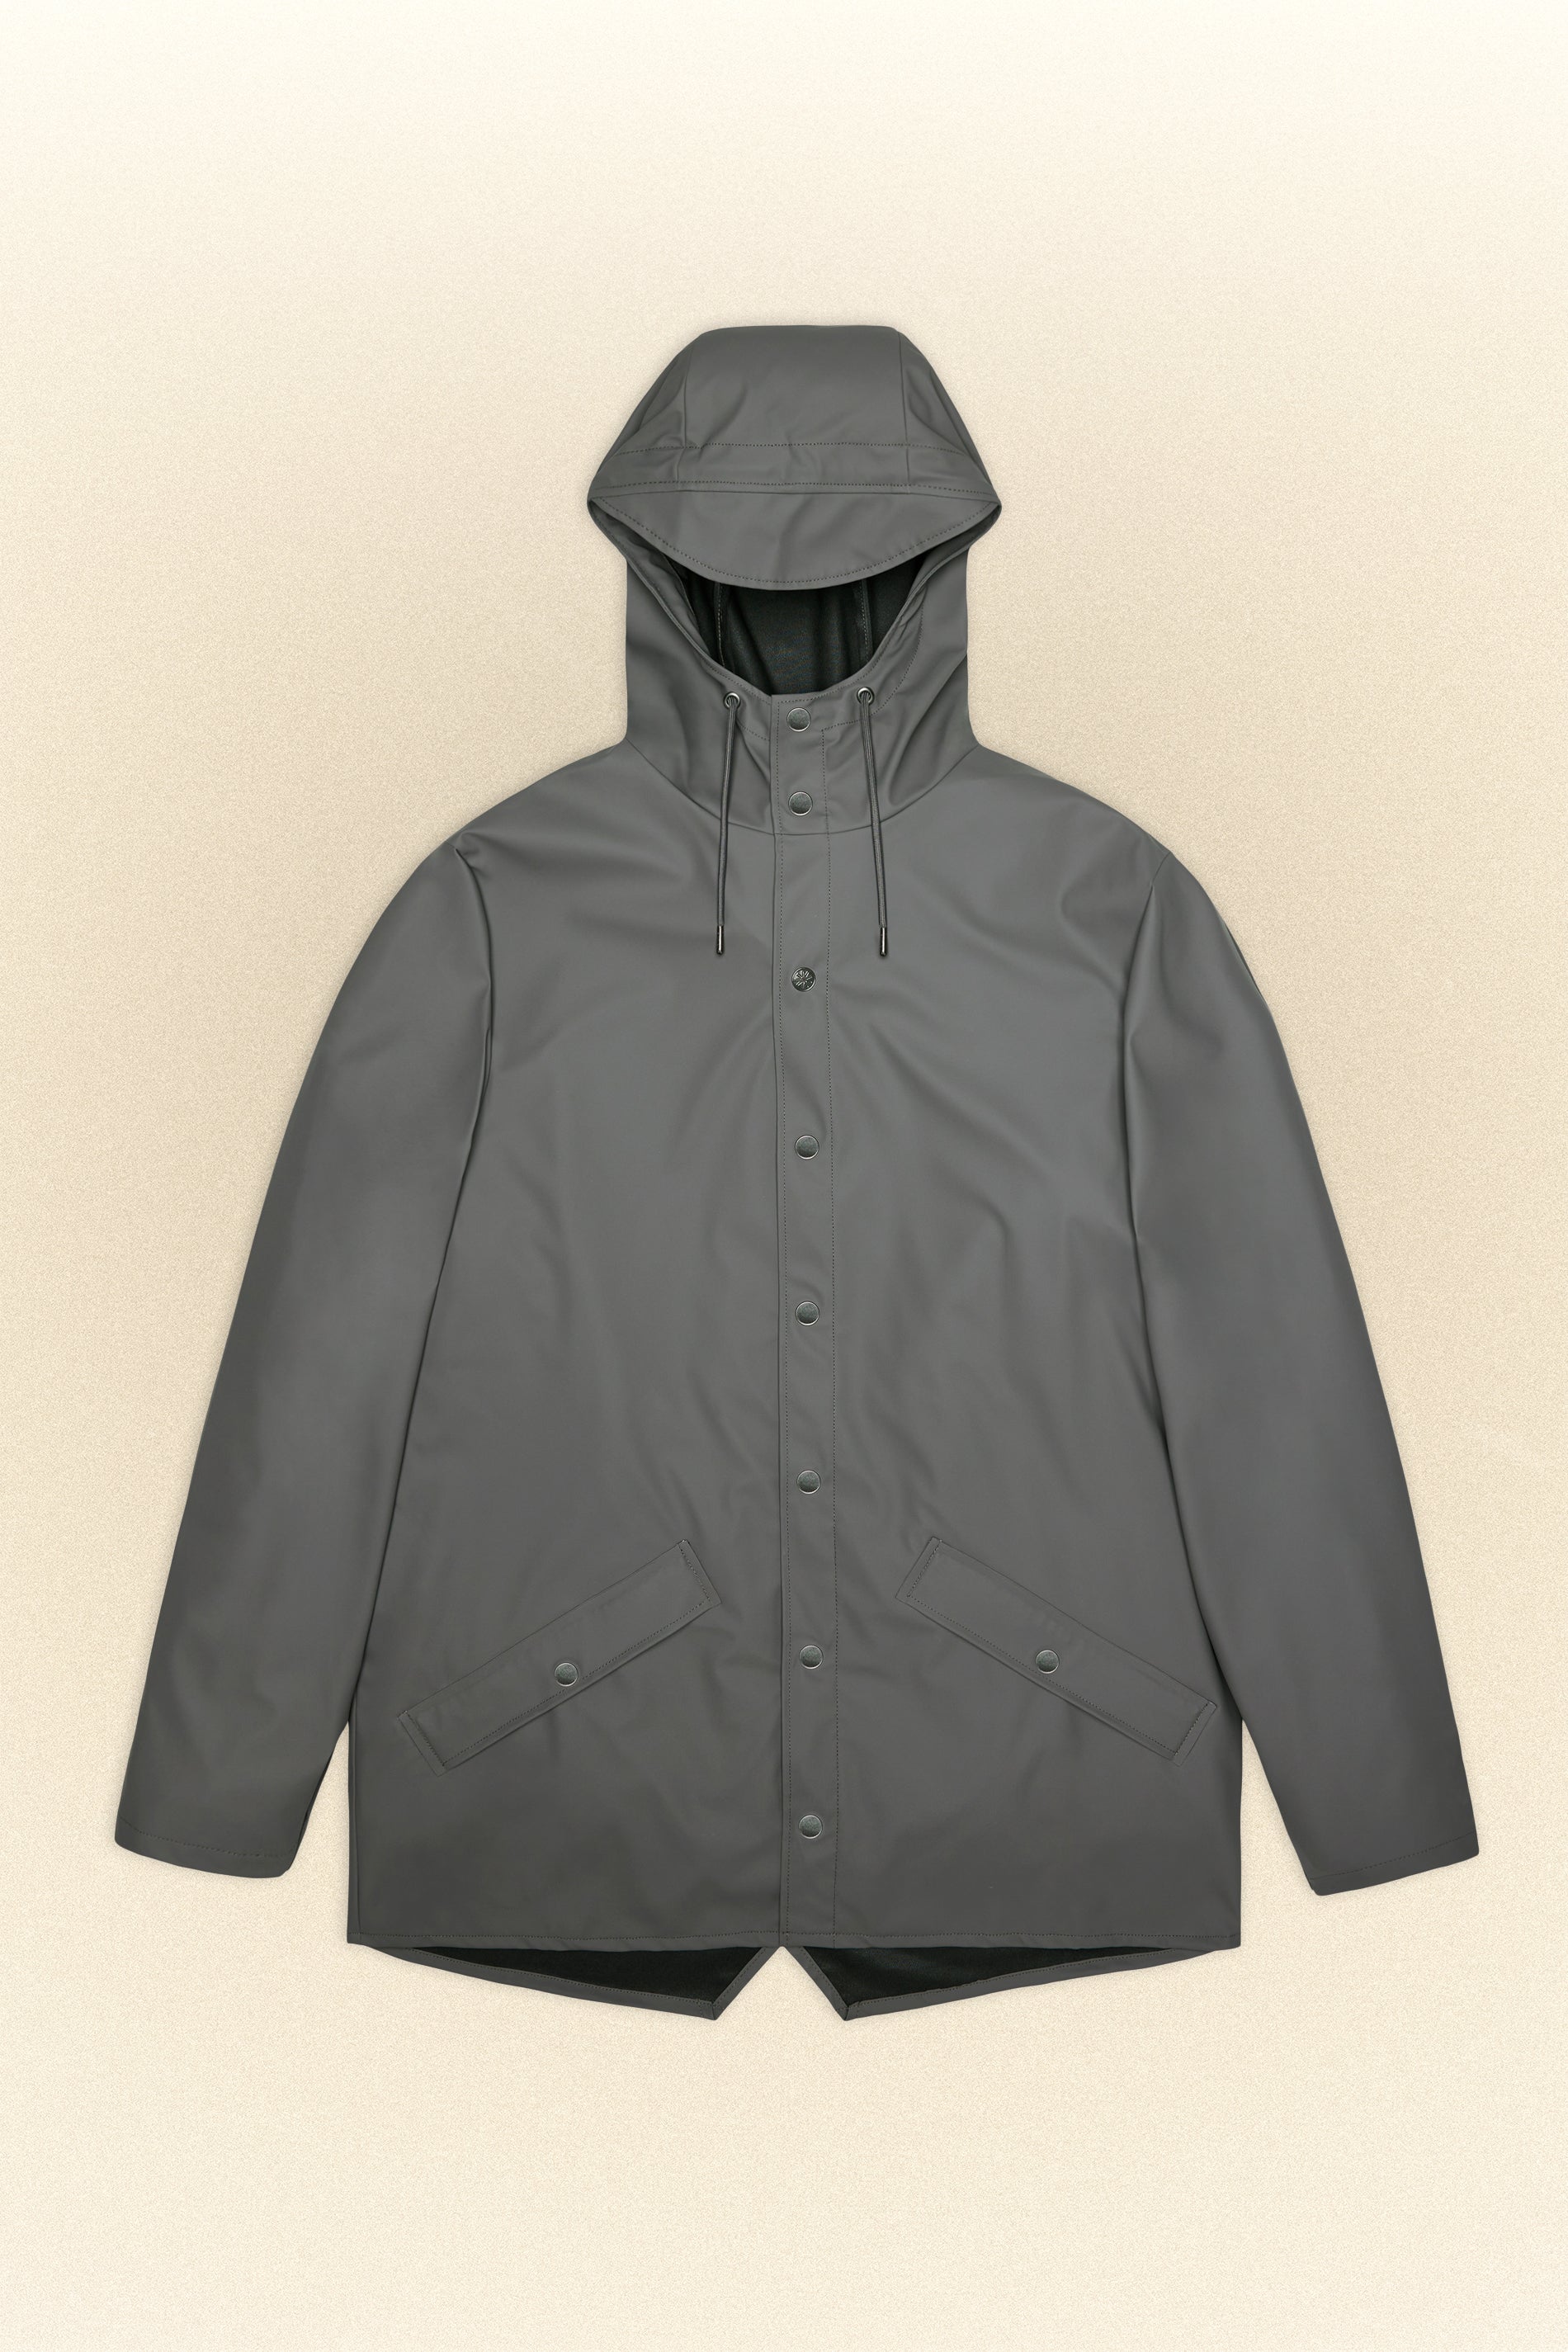 rains-grey-jacket